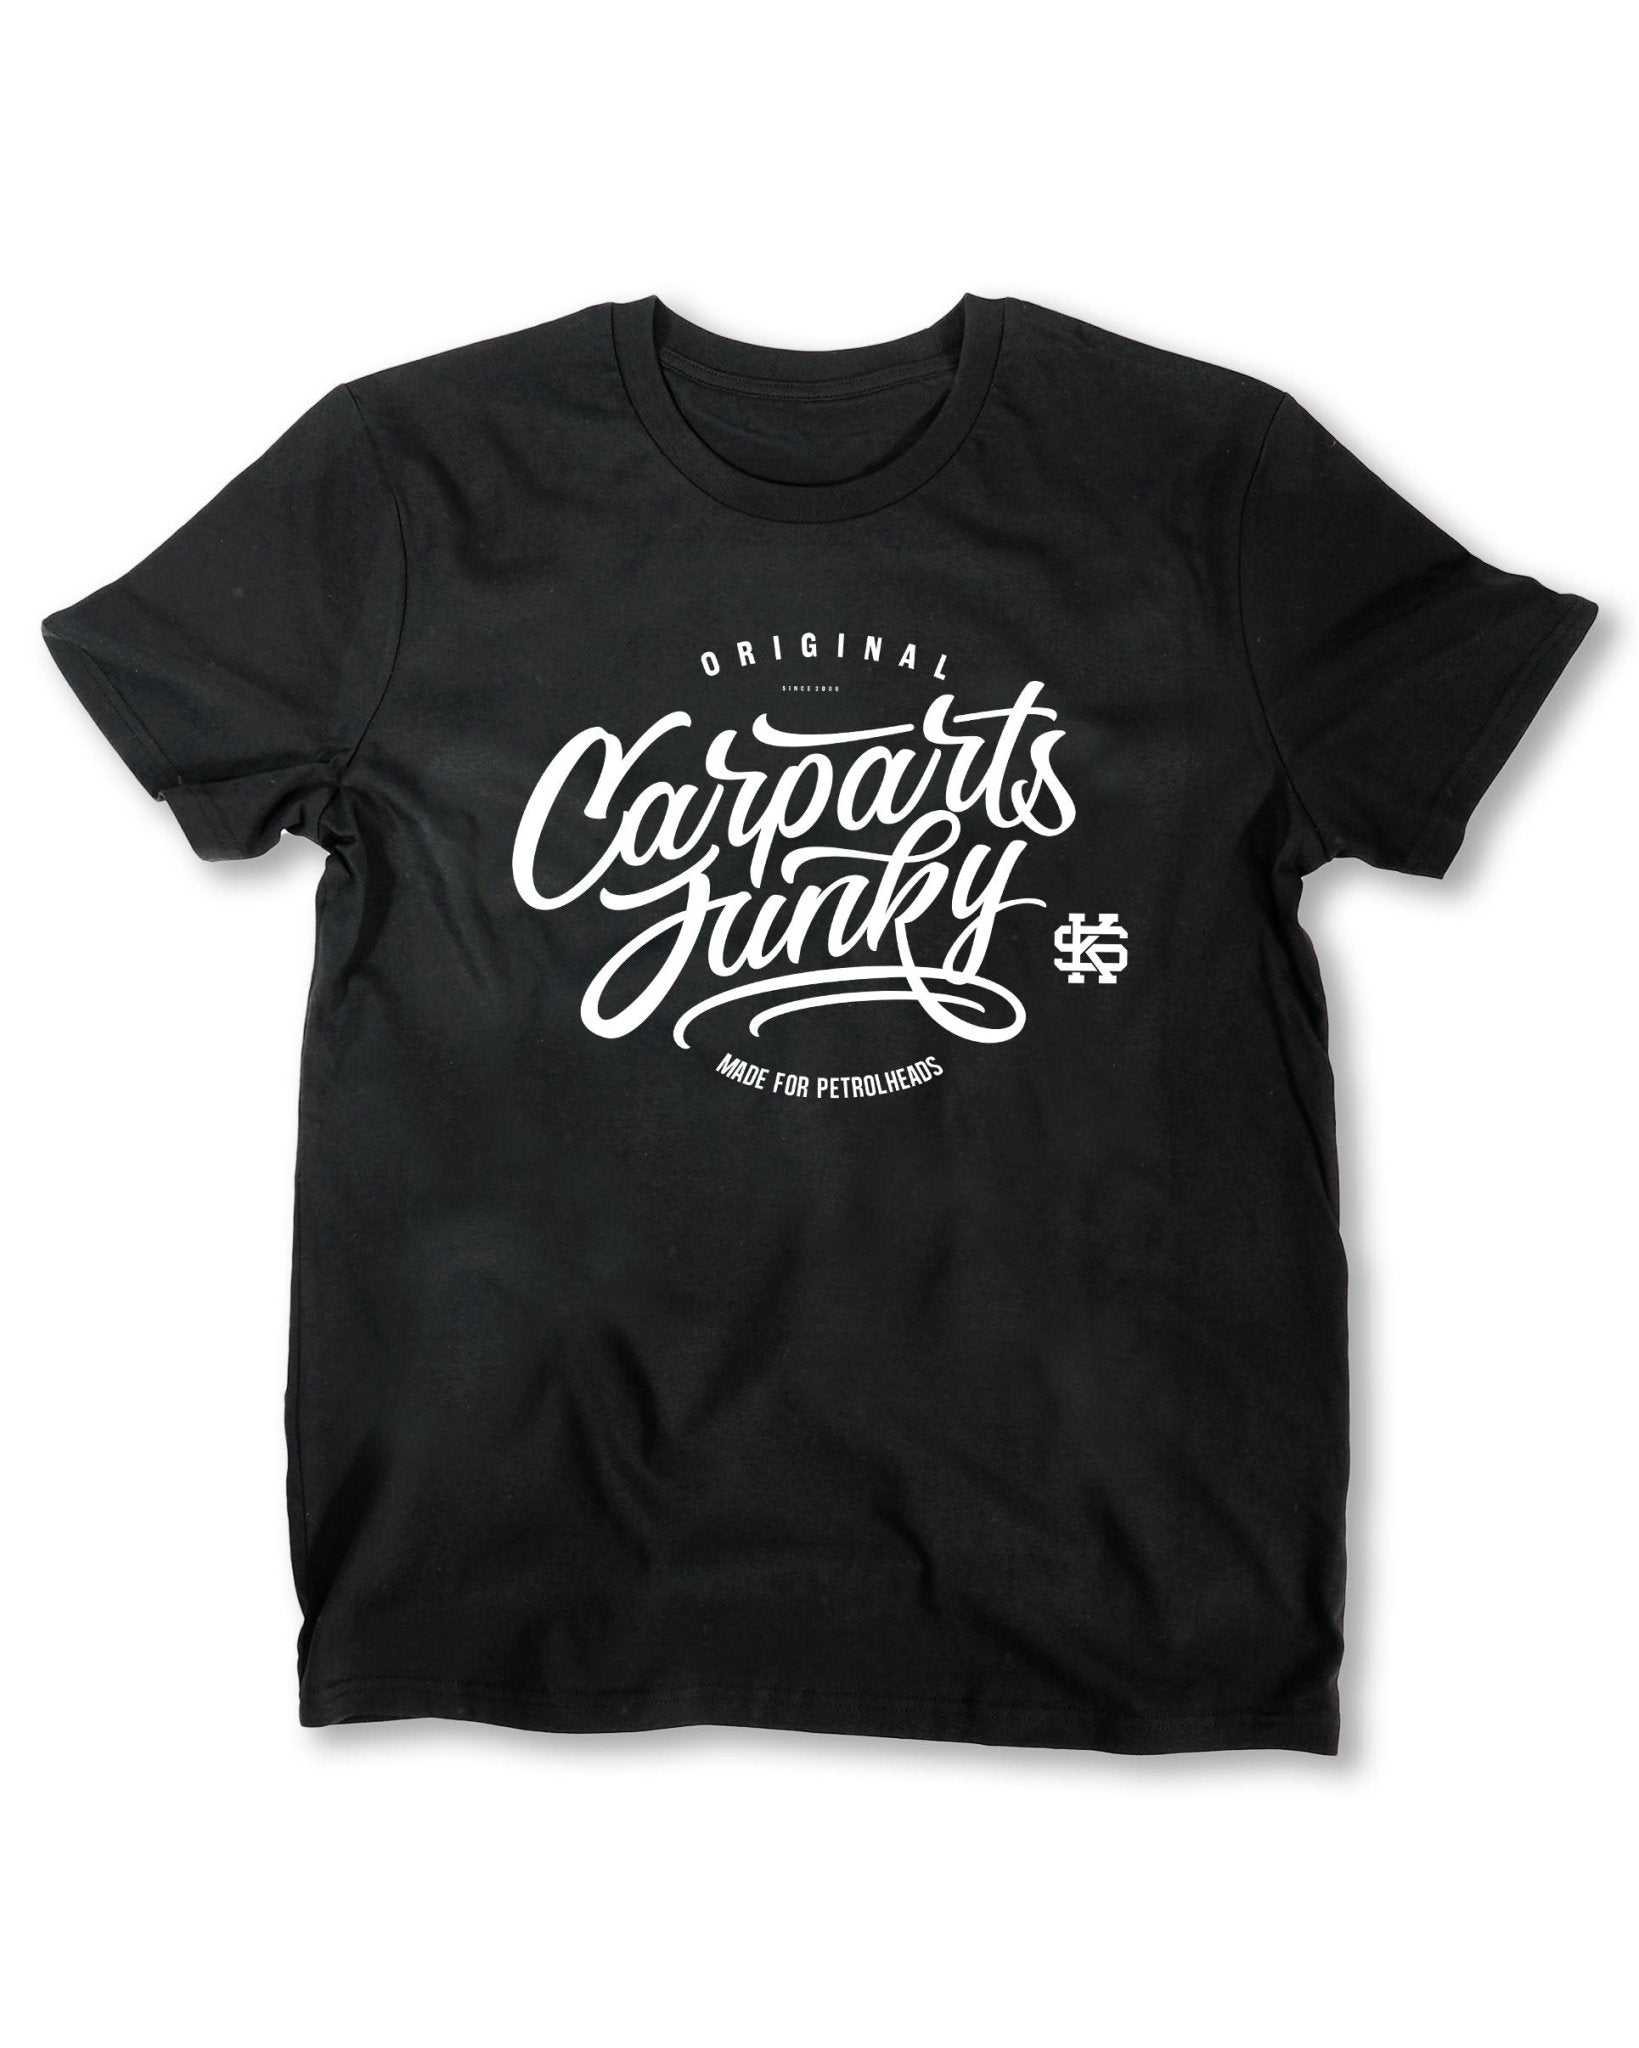 Carparts Junkie I T-Shirt I 2017 - Sourkrauts Classics